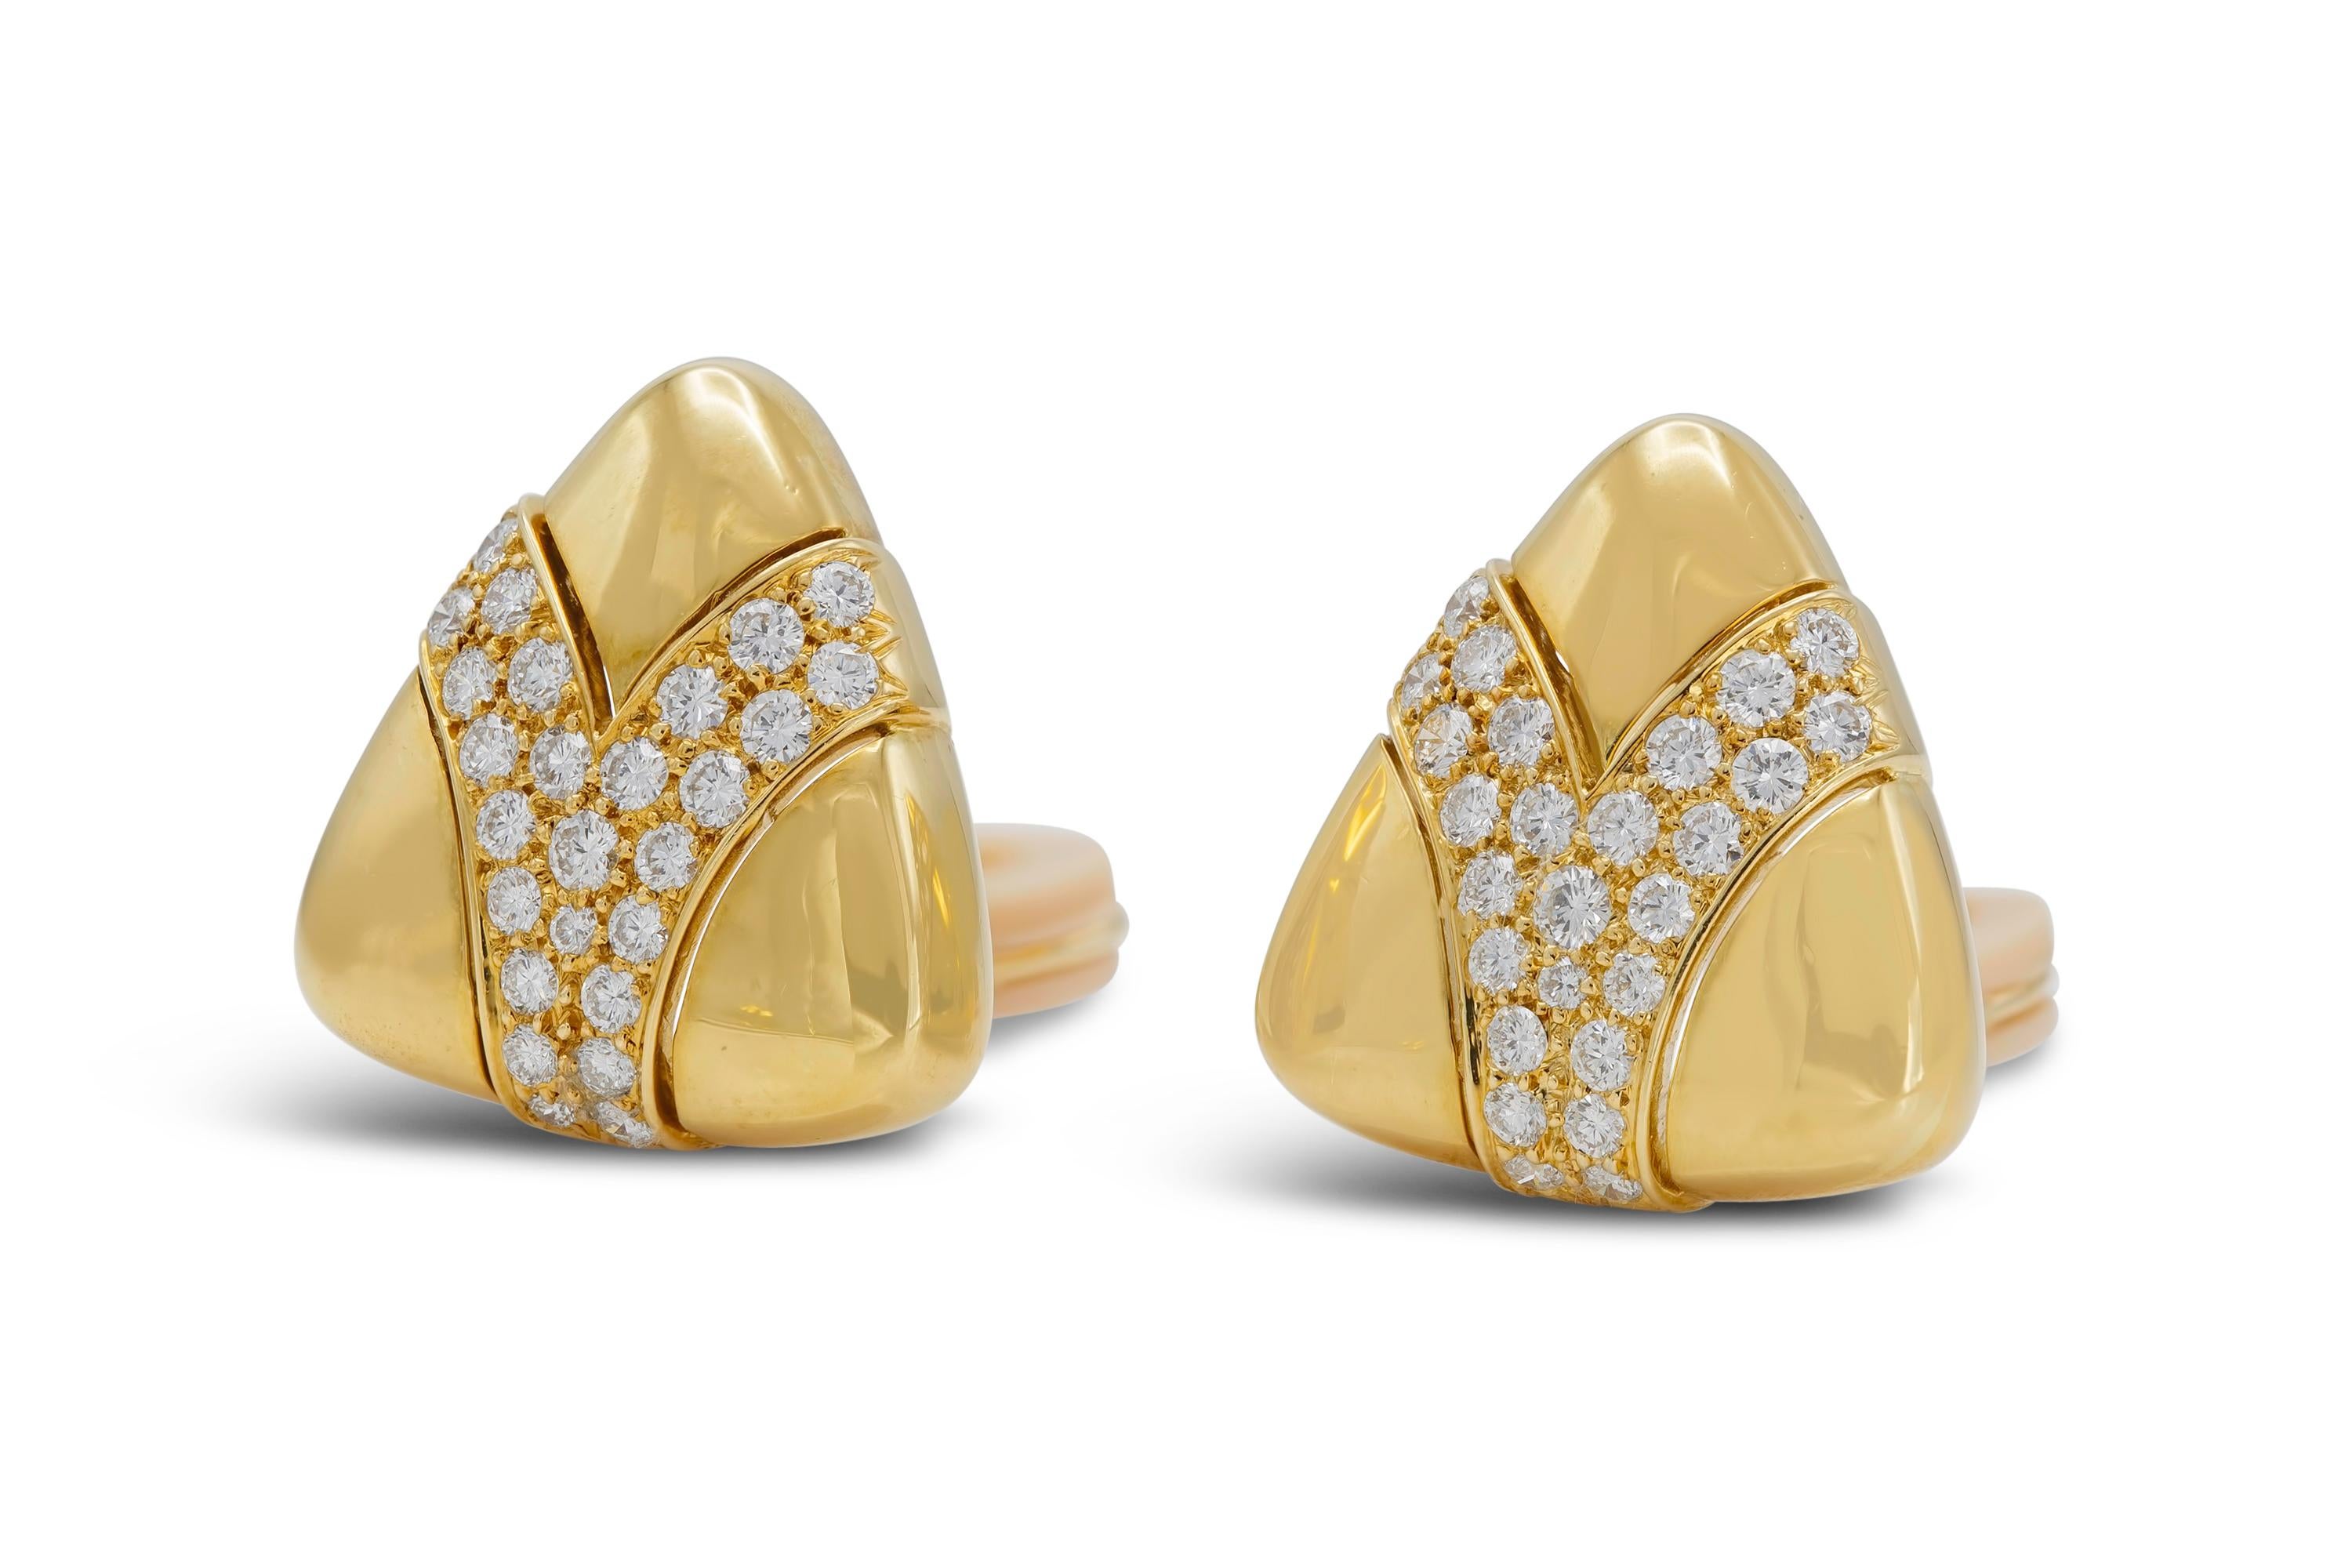 Finement réalisée en or jaune 18 carats avec des diamants ronds de taille brillant pesant approximativement un total de 2,40 carats.
Clip-ons